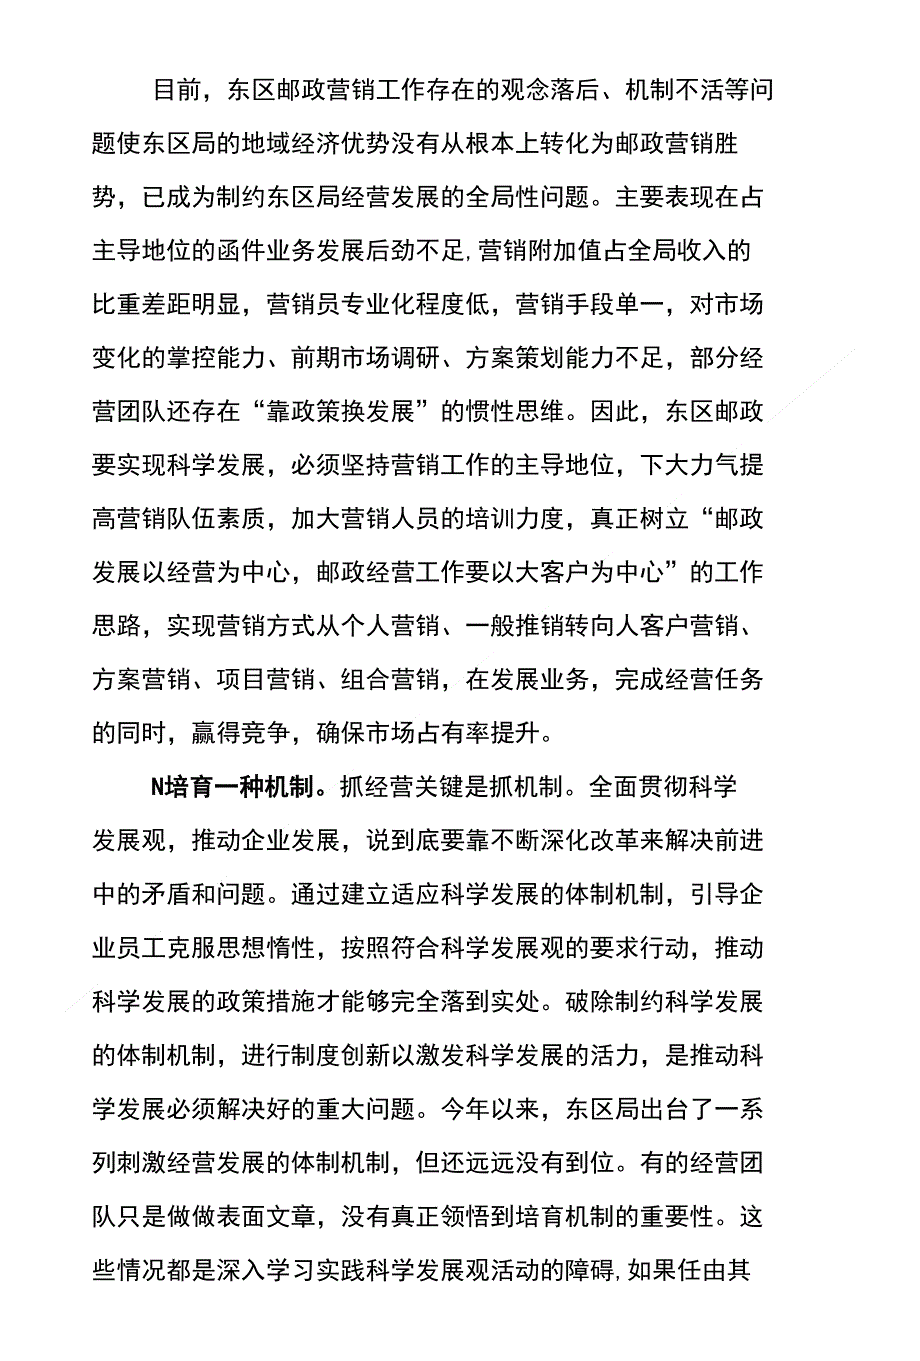 深入学习实践科学发展观 - 北京邮政党建网_第4页